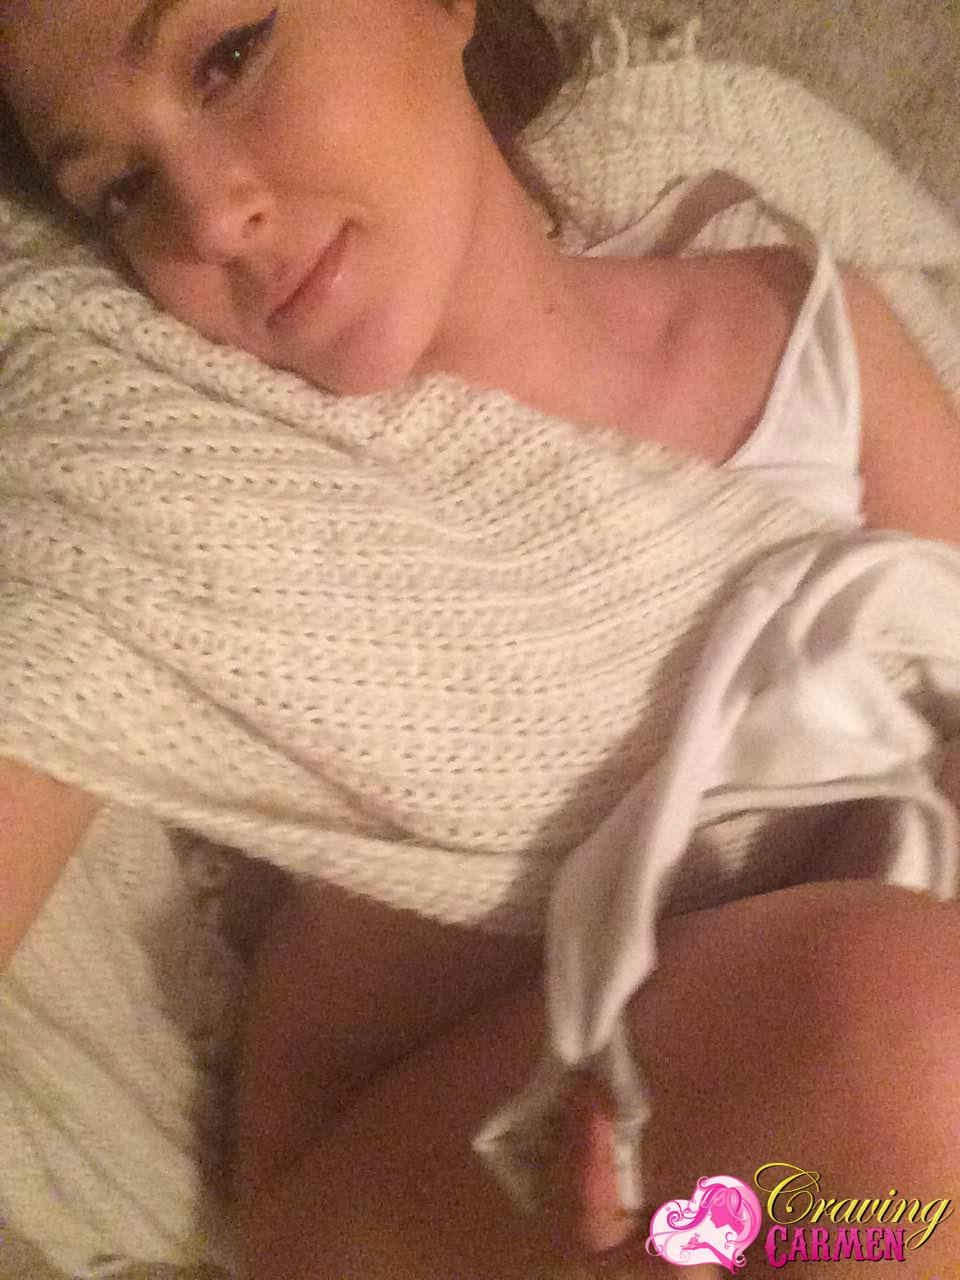 Craving carmen macht sich nackt und nimmt Selfies im Bett
 #53874527